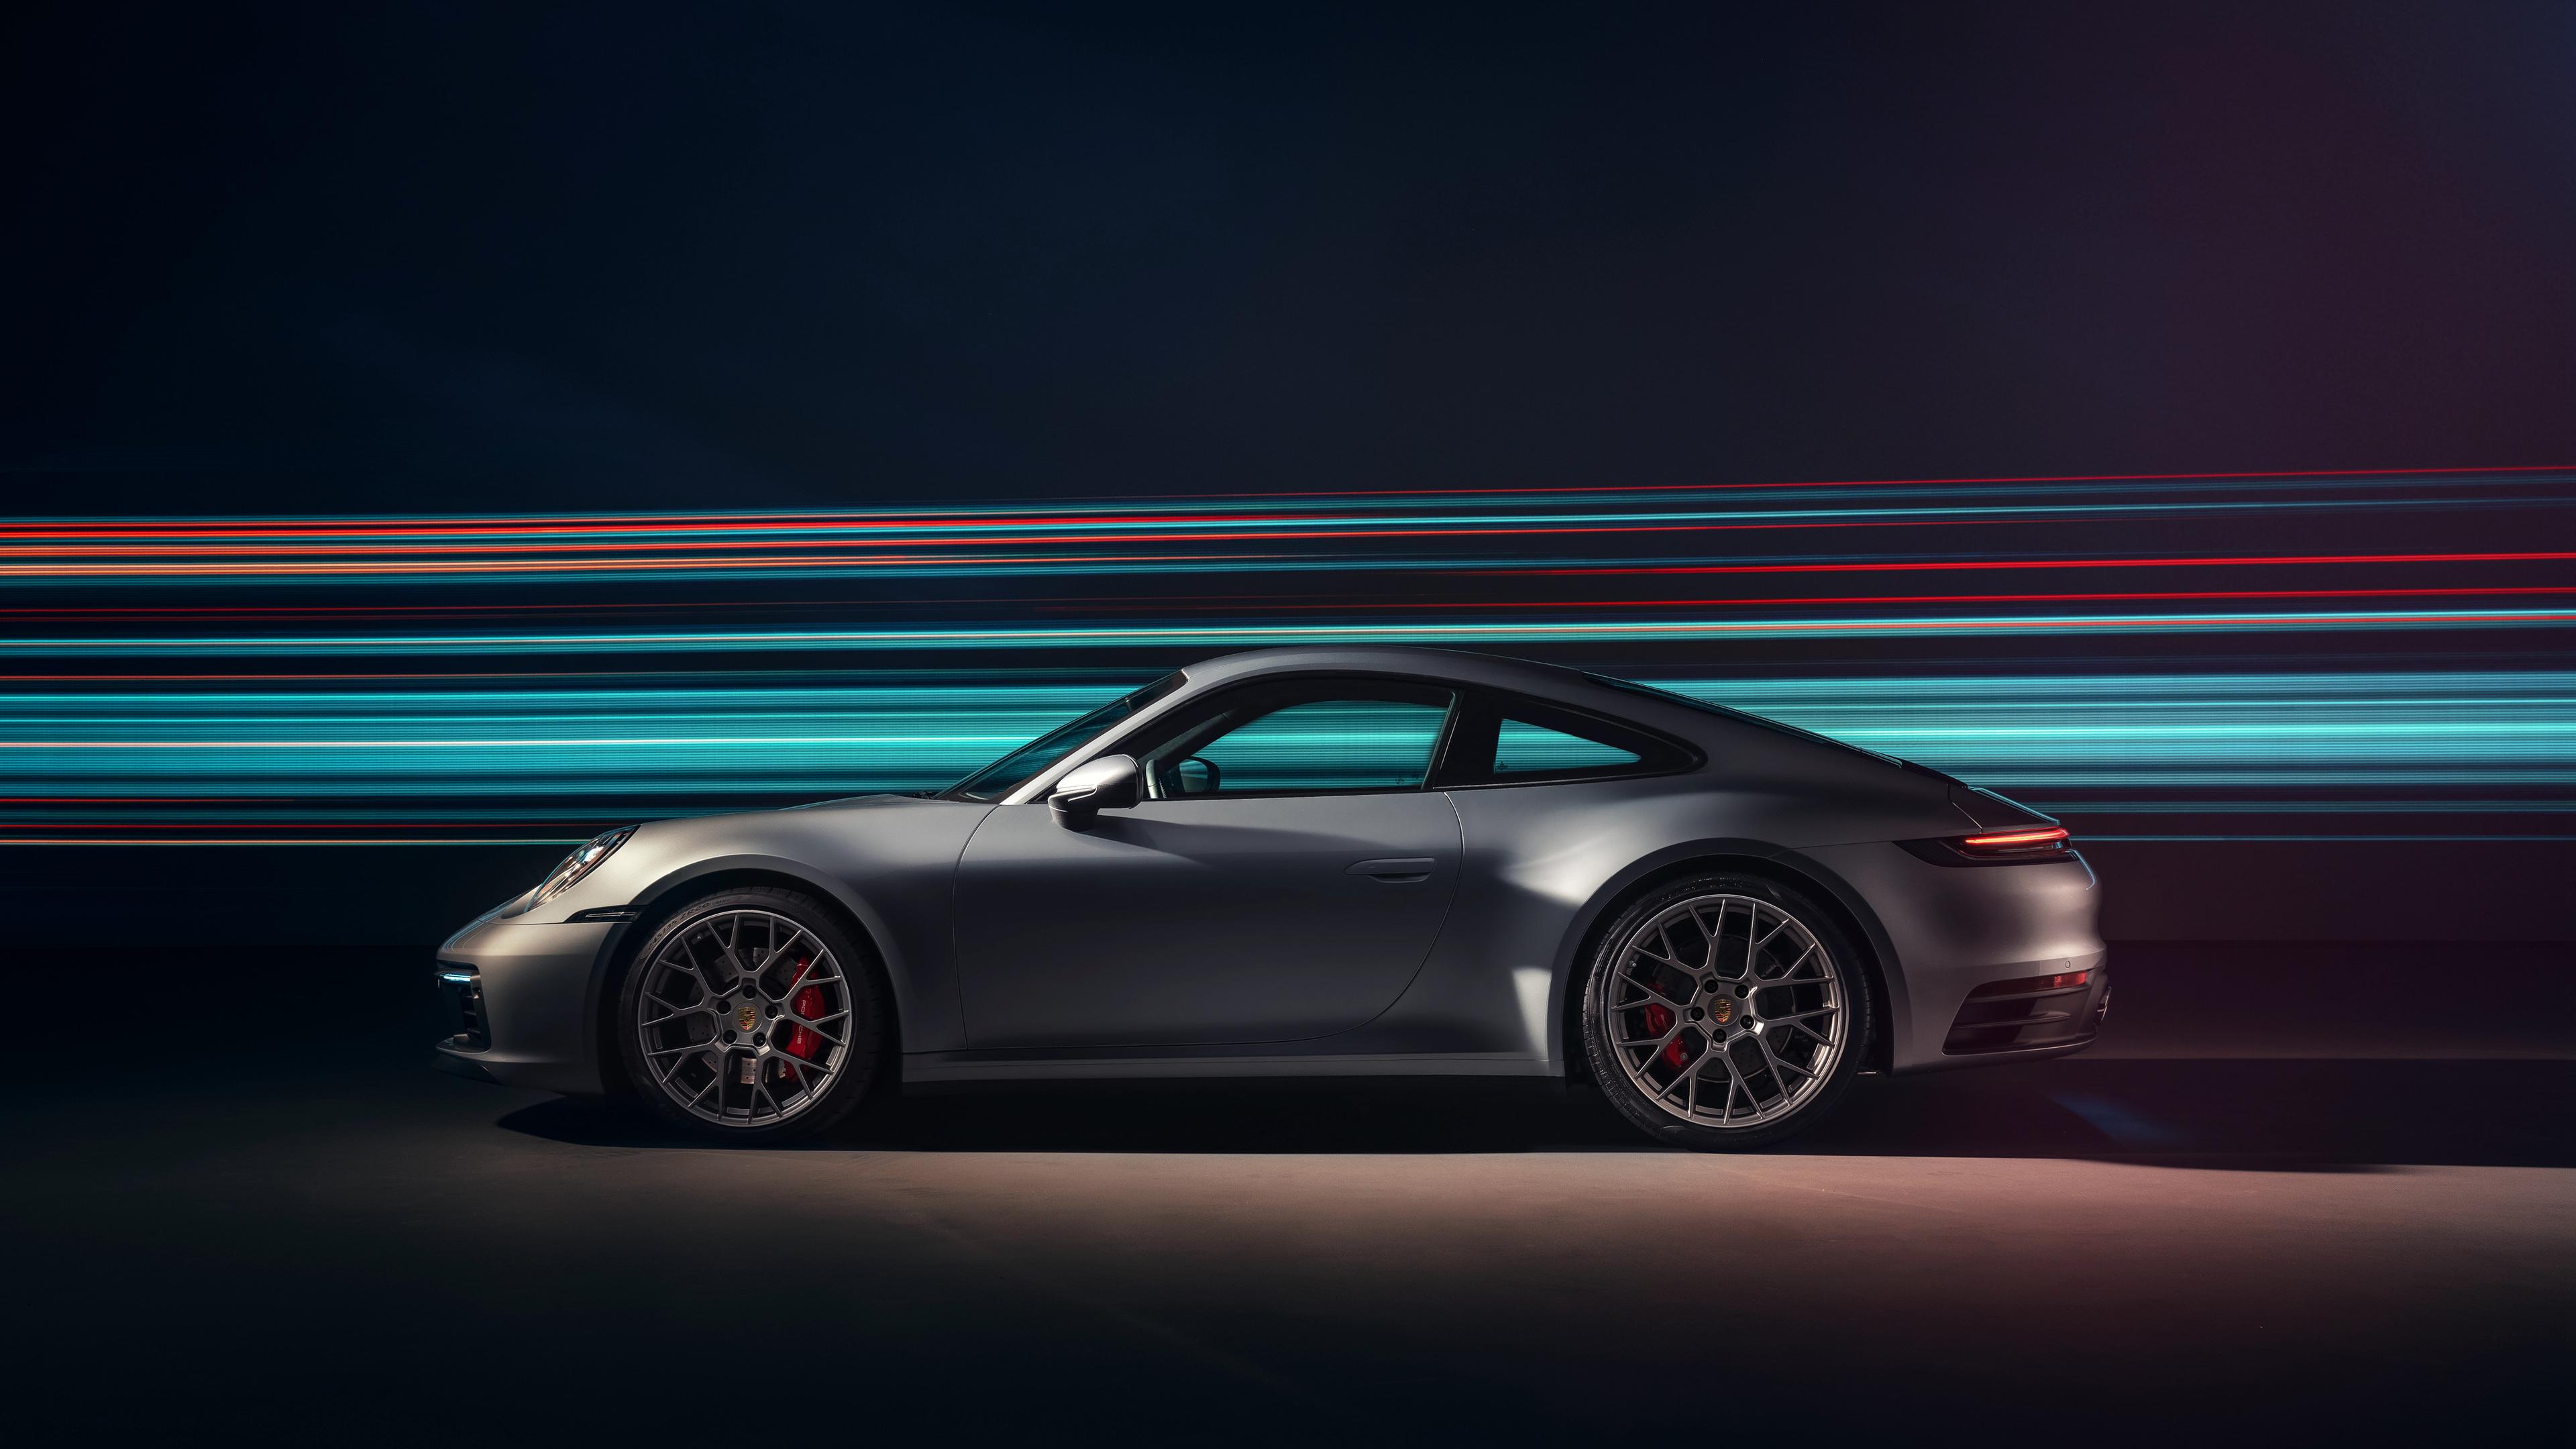 3840 x 2160 · jpeg - 3840x2160 Porsche 911 Carrera 4S 2019 4K 4k HD 4k Wallpapers, Images ...